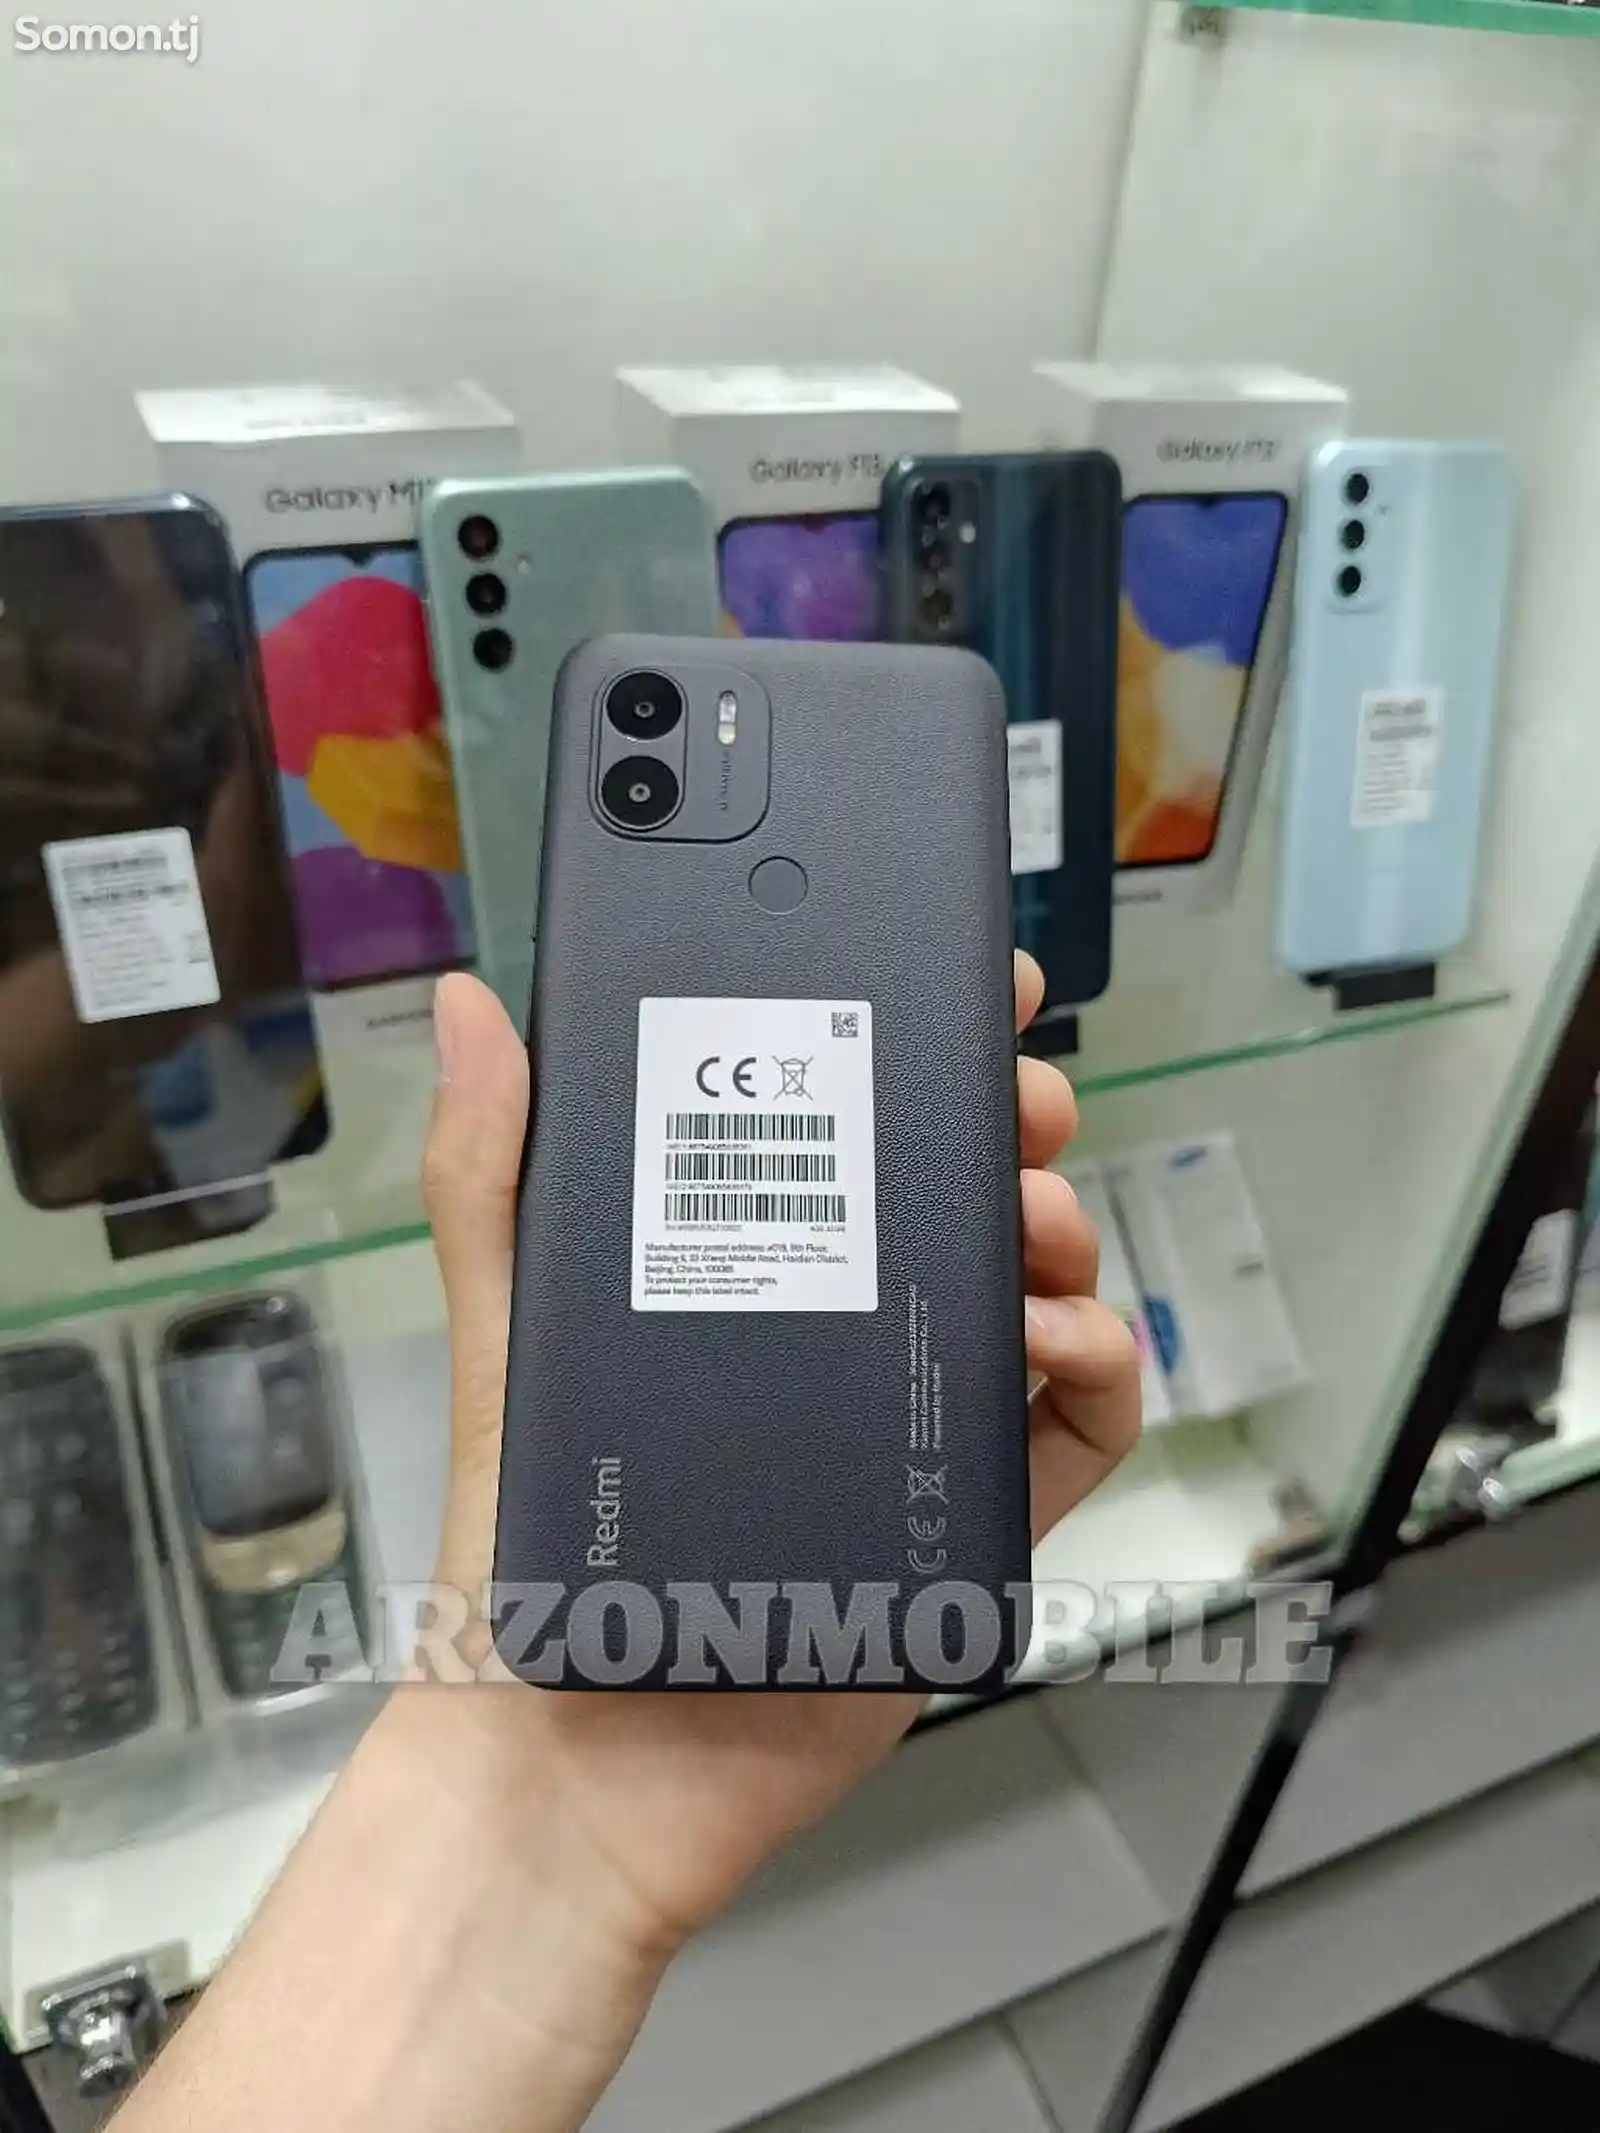 Xiaomi Redmi A2+ 64Gb Black-4